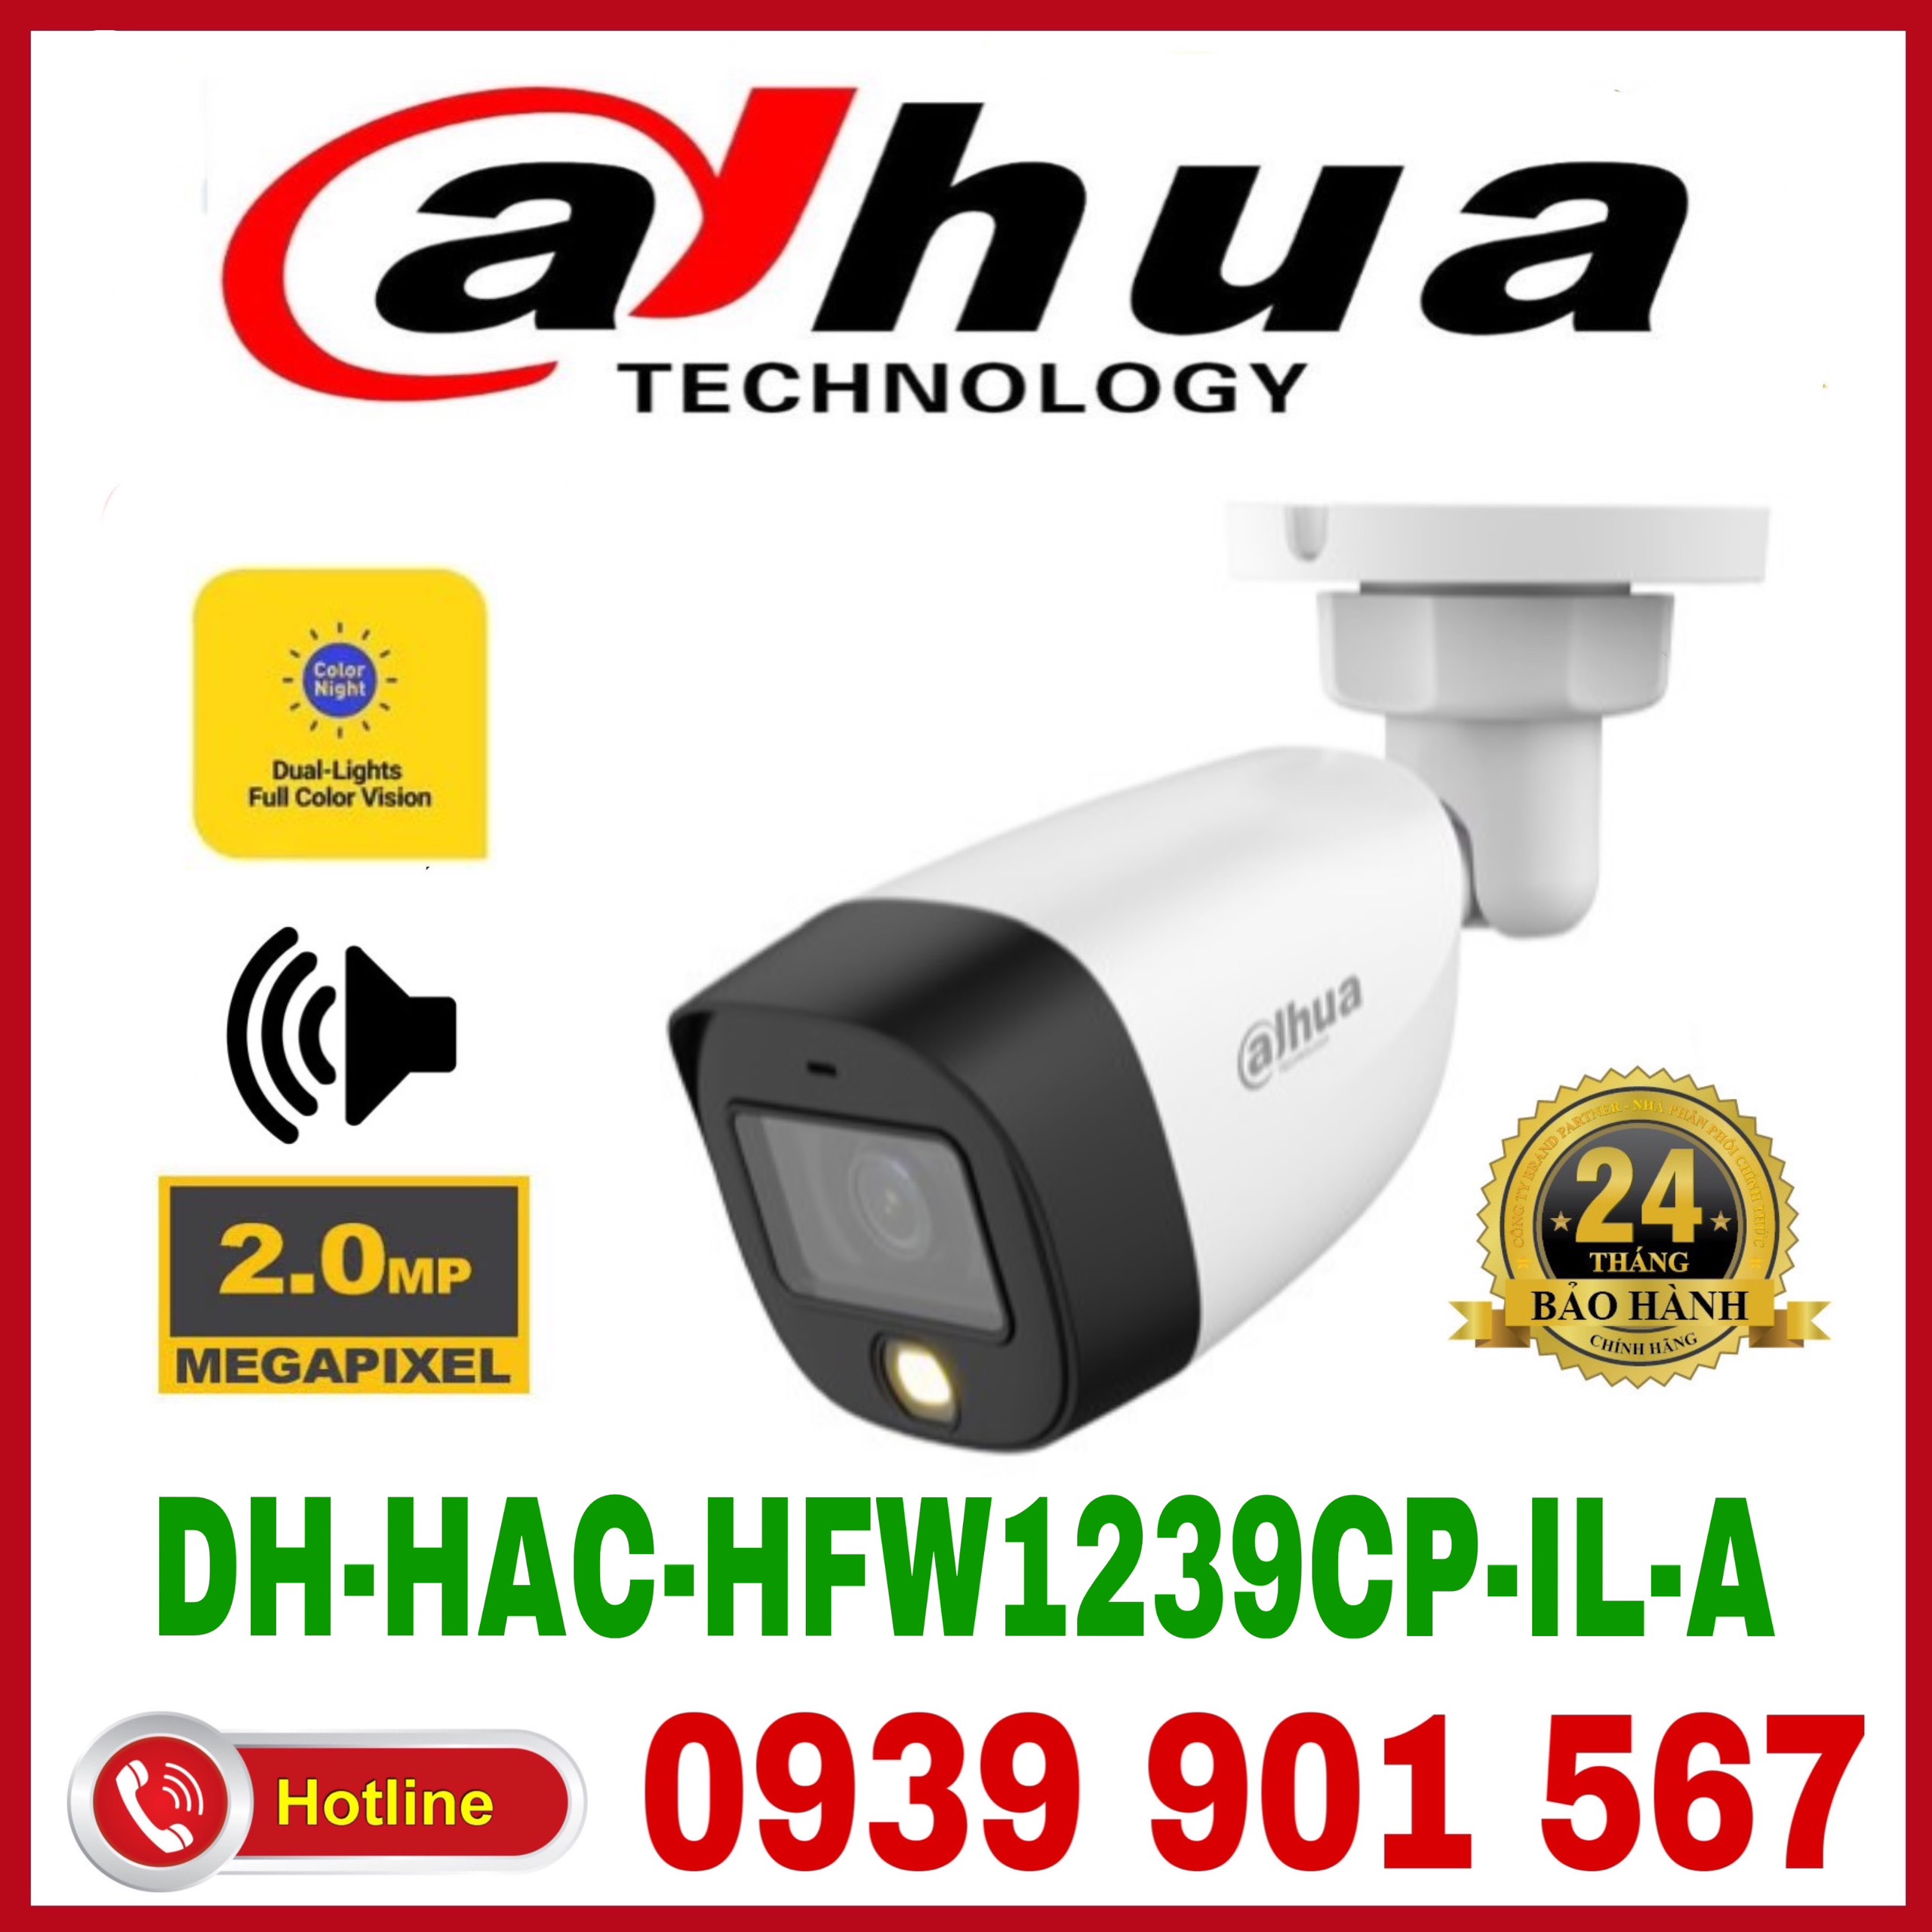 Camera HDCVI Full Color ánh sáng kép thông minh 2.0MP DH-HAC-HFW1239CP-IL-A